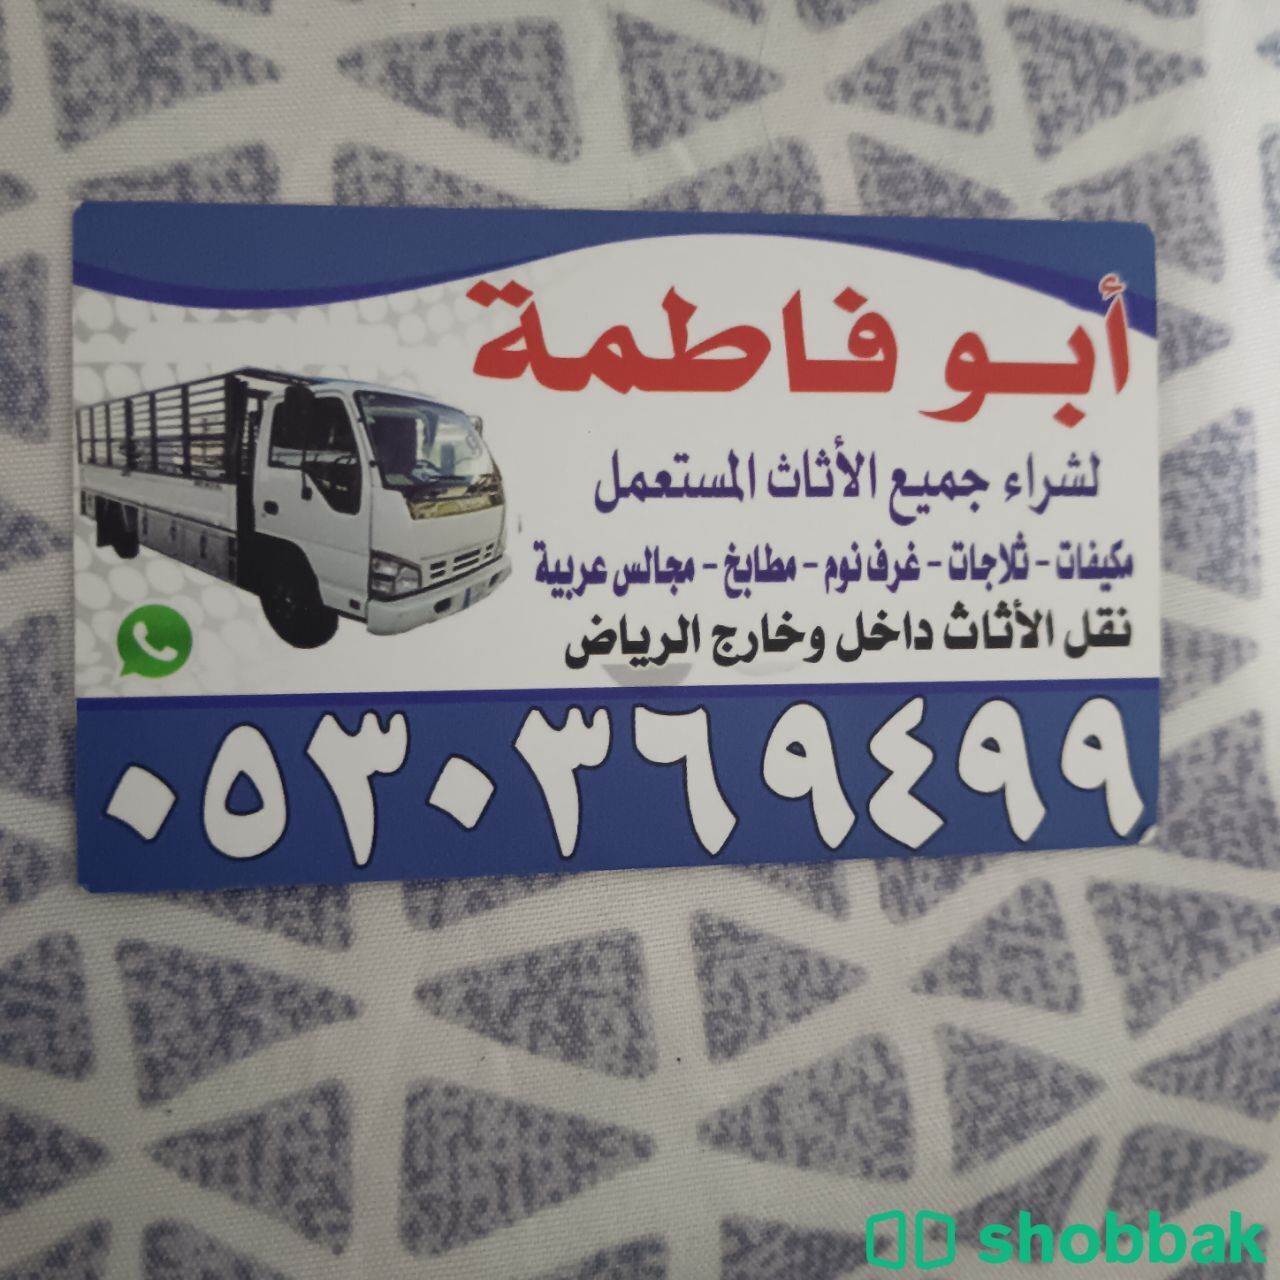 شراء أثاث مستعمل حي العزيزية 0530369499  Shobbak Saudi Arabia